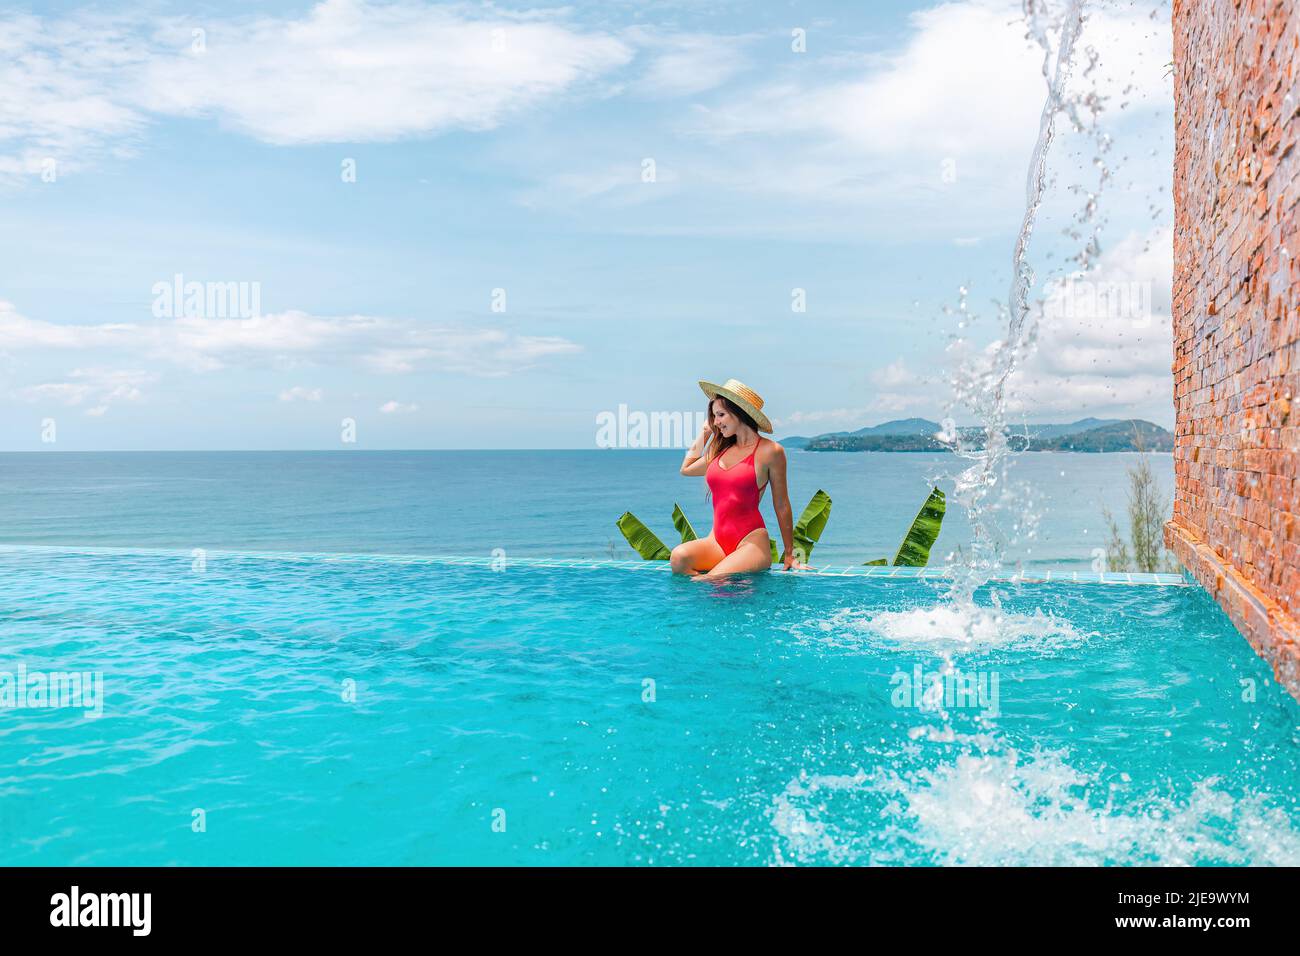 Vacances d'été avec vue sur la mer. Jeune femme en maillot de bain assis au bord de la piscine Banque D'Images